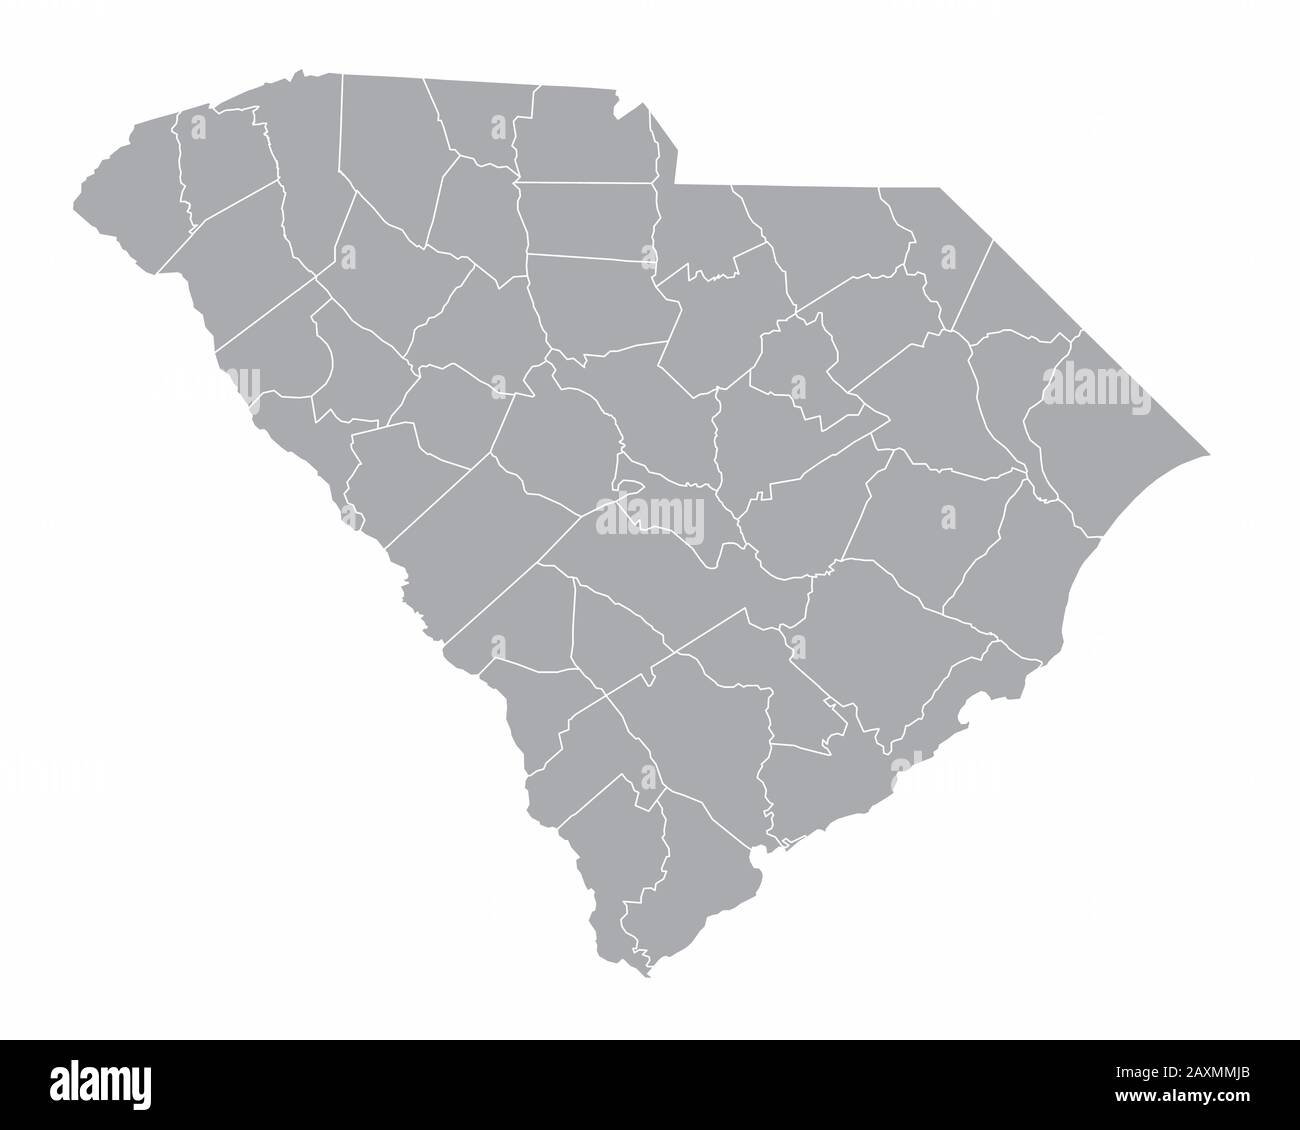 South Carolina Mappa Illustrazione Vettoriale